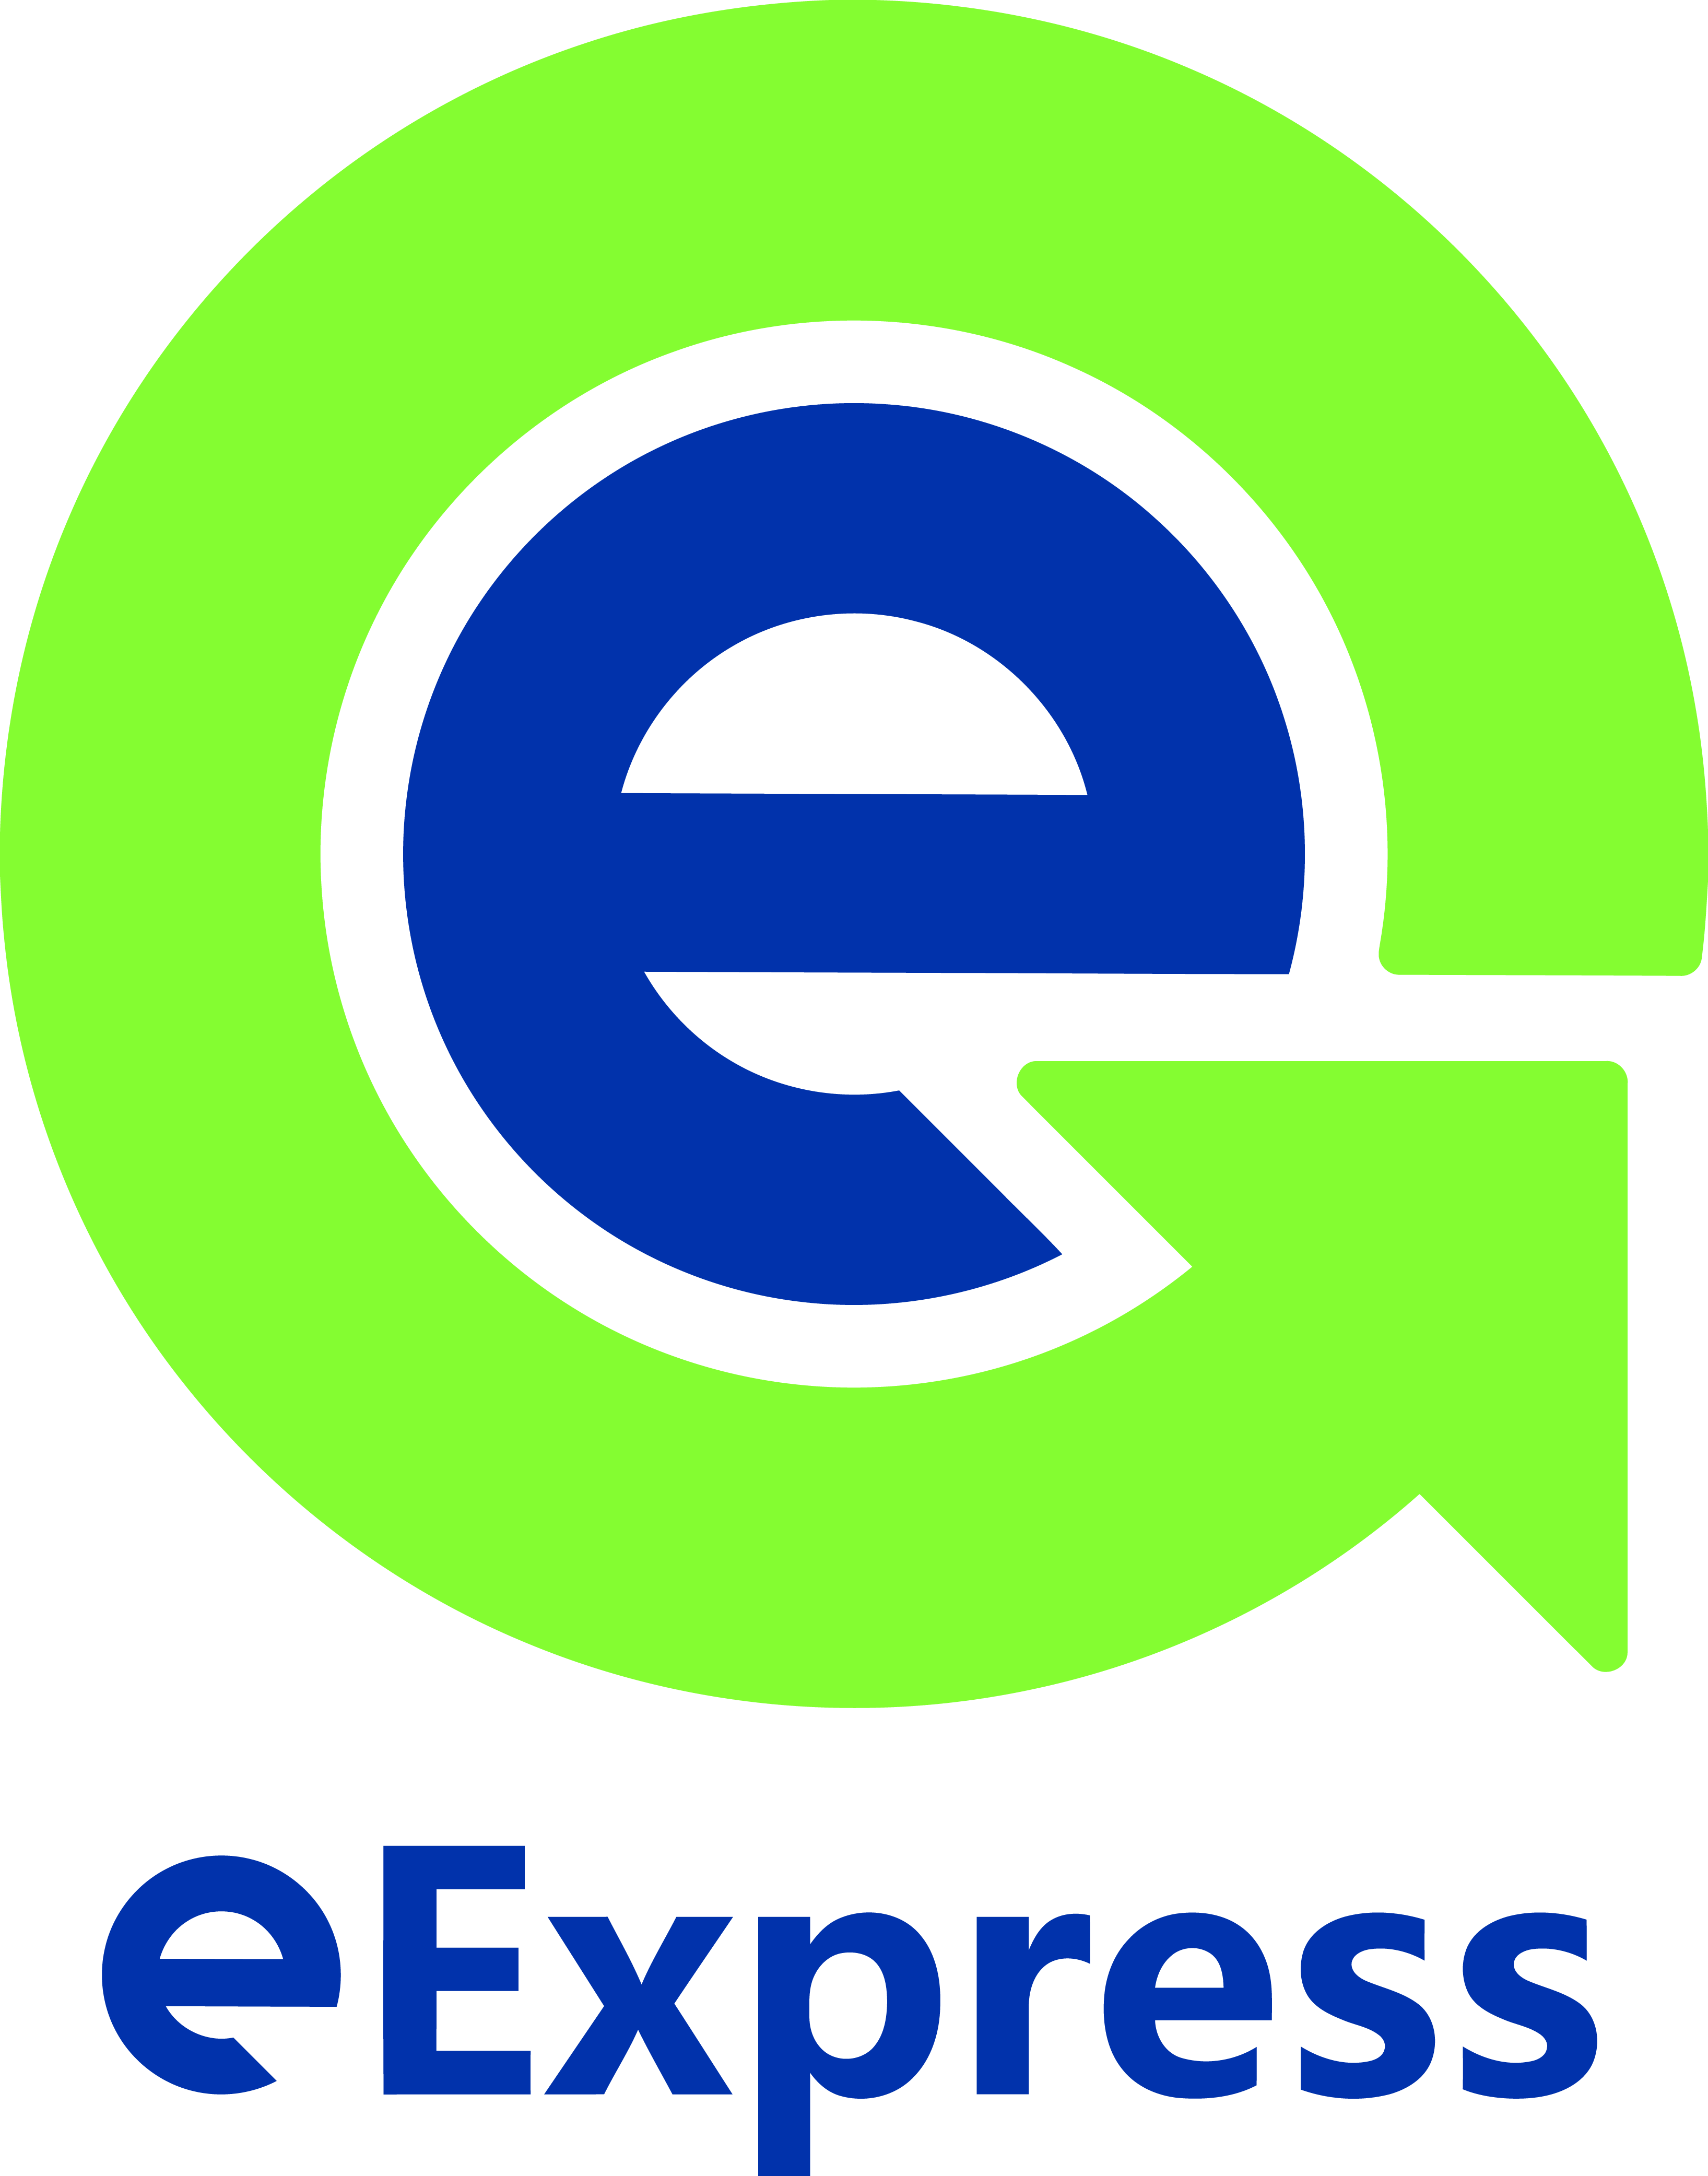 eExpress logo